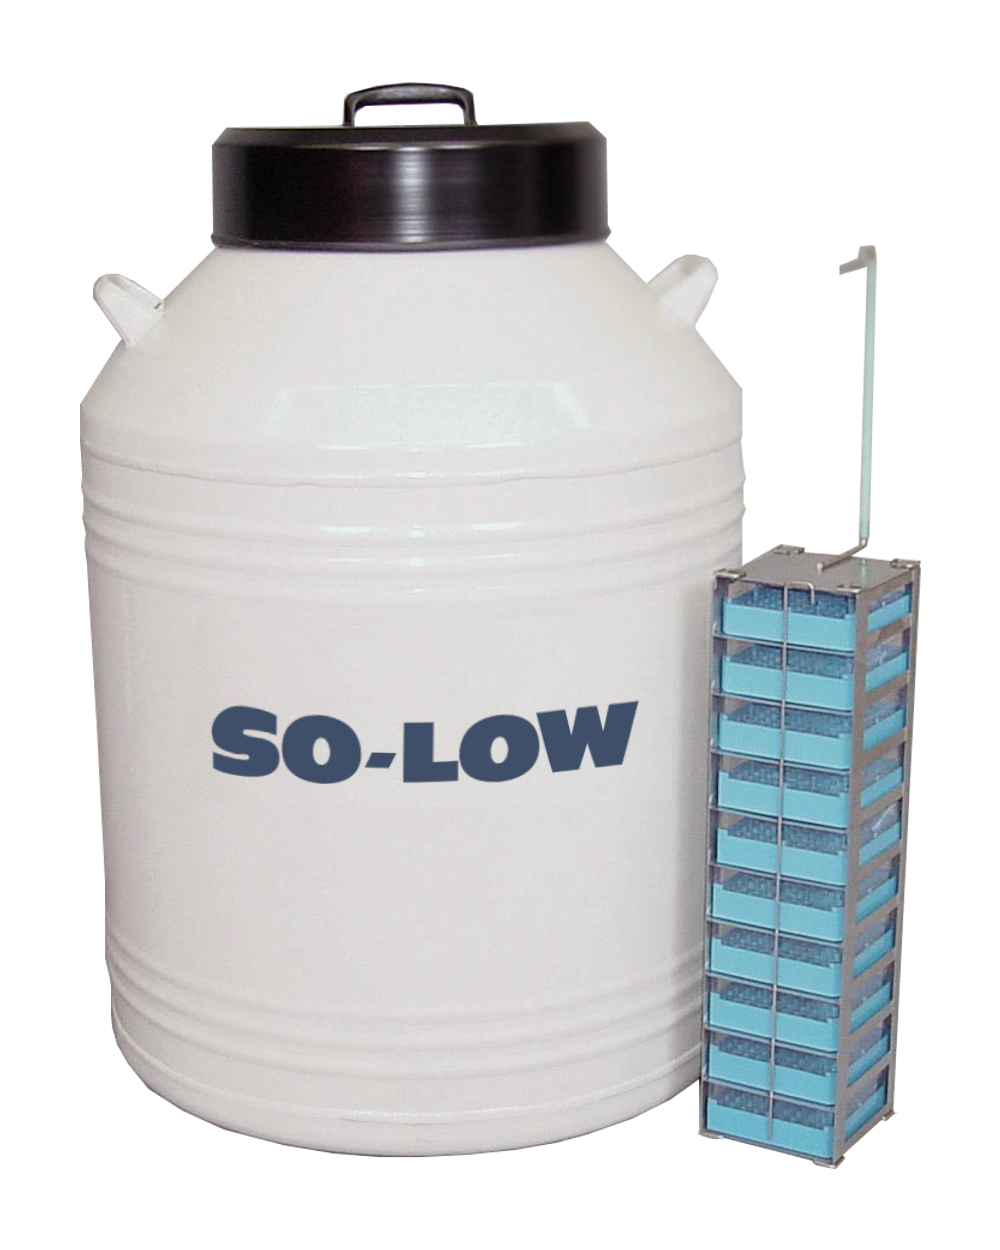 So-Low 47 liter LN2 Tank w/ Polycarbonate Boxes